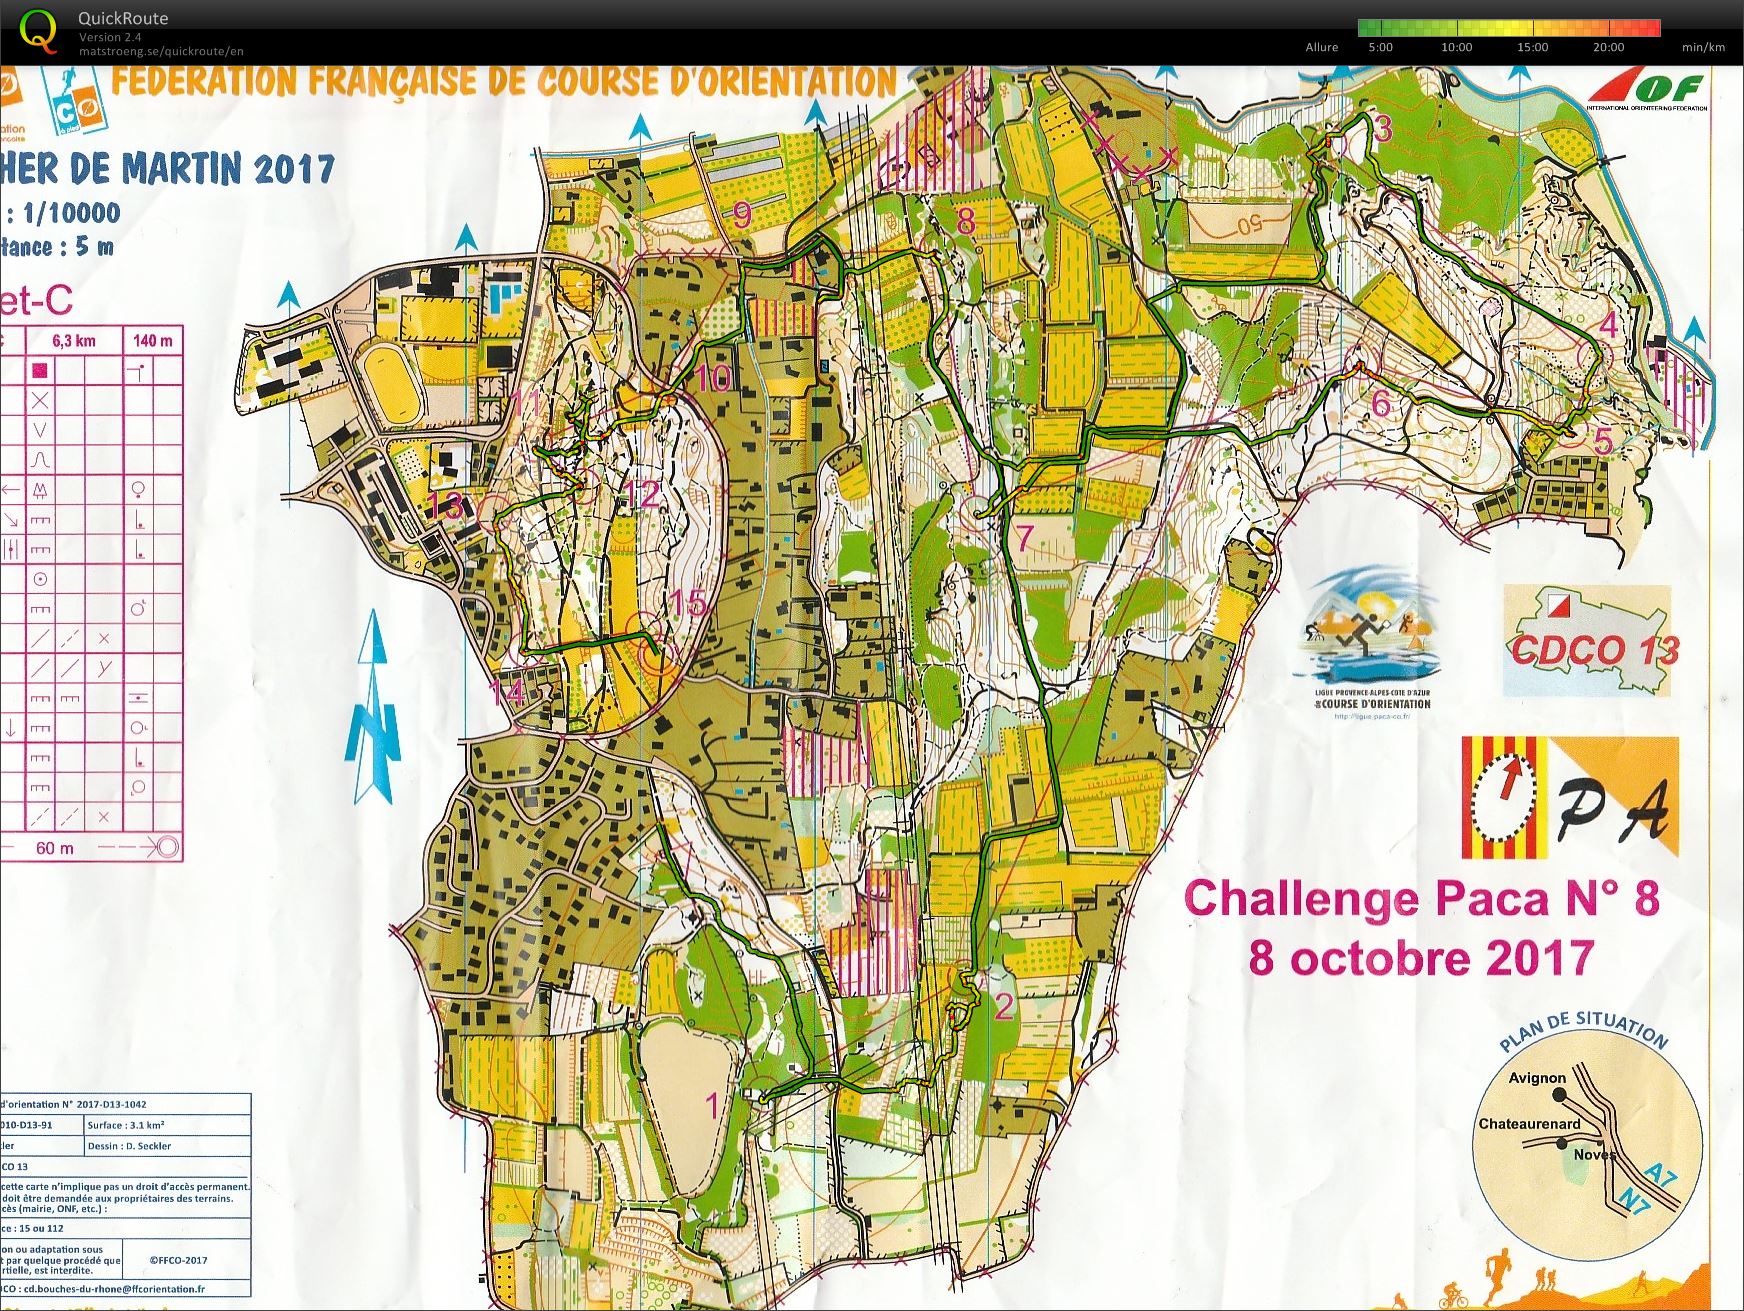 Challenge PACA n° 8 Chateaurenard (08.10.2017)